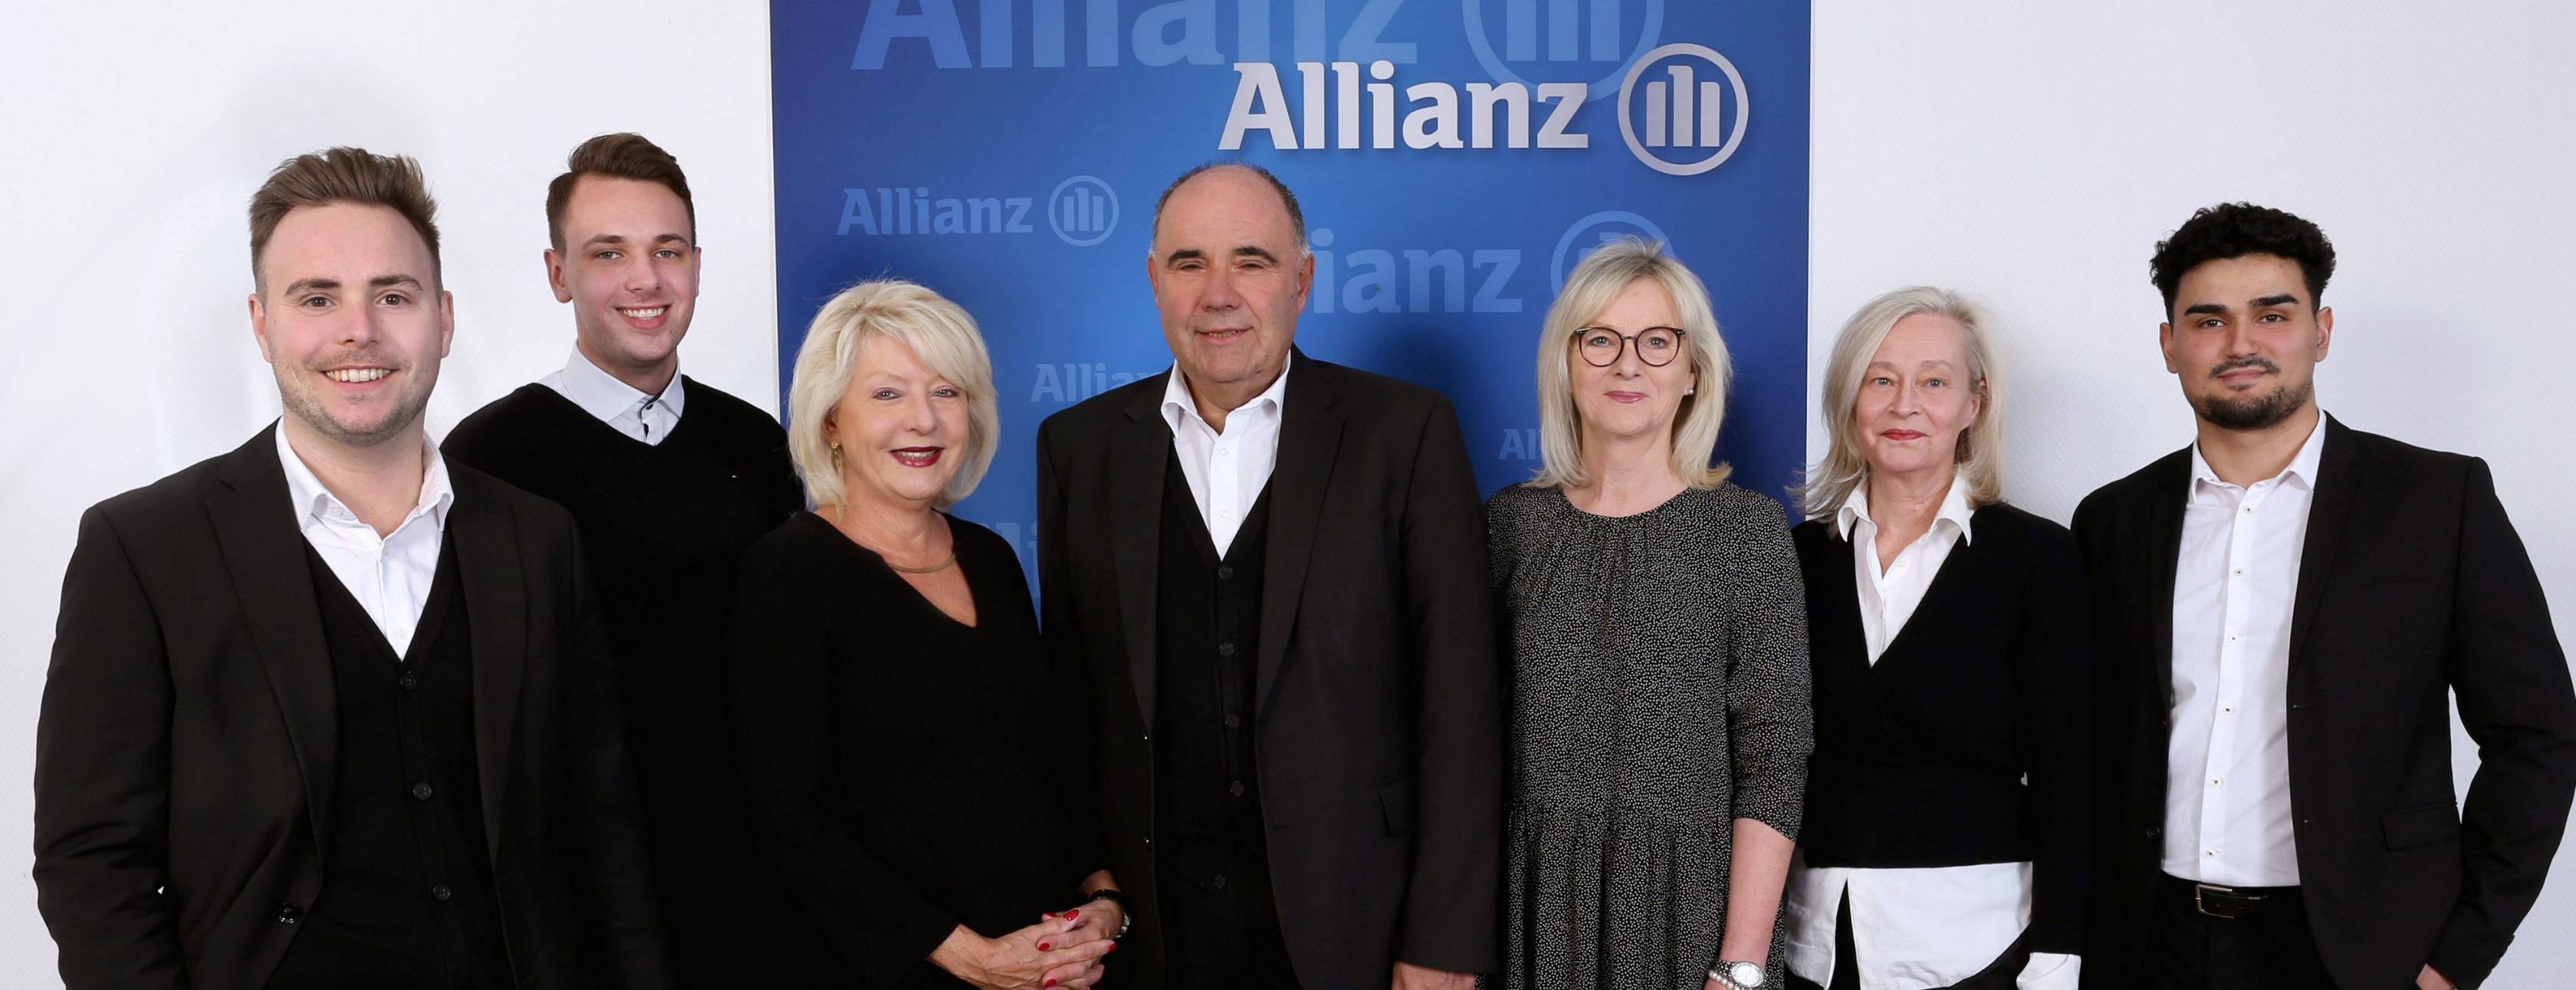 Allianz Versicherung Ingo Herchenhan Düsseldorf - Allianz Private Krankenversicherung - Gute Wahl! 